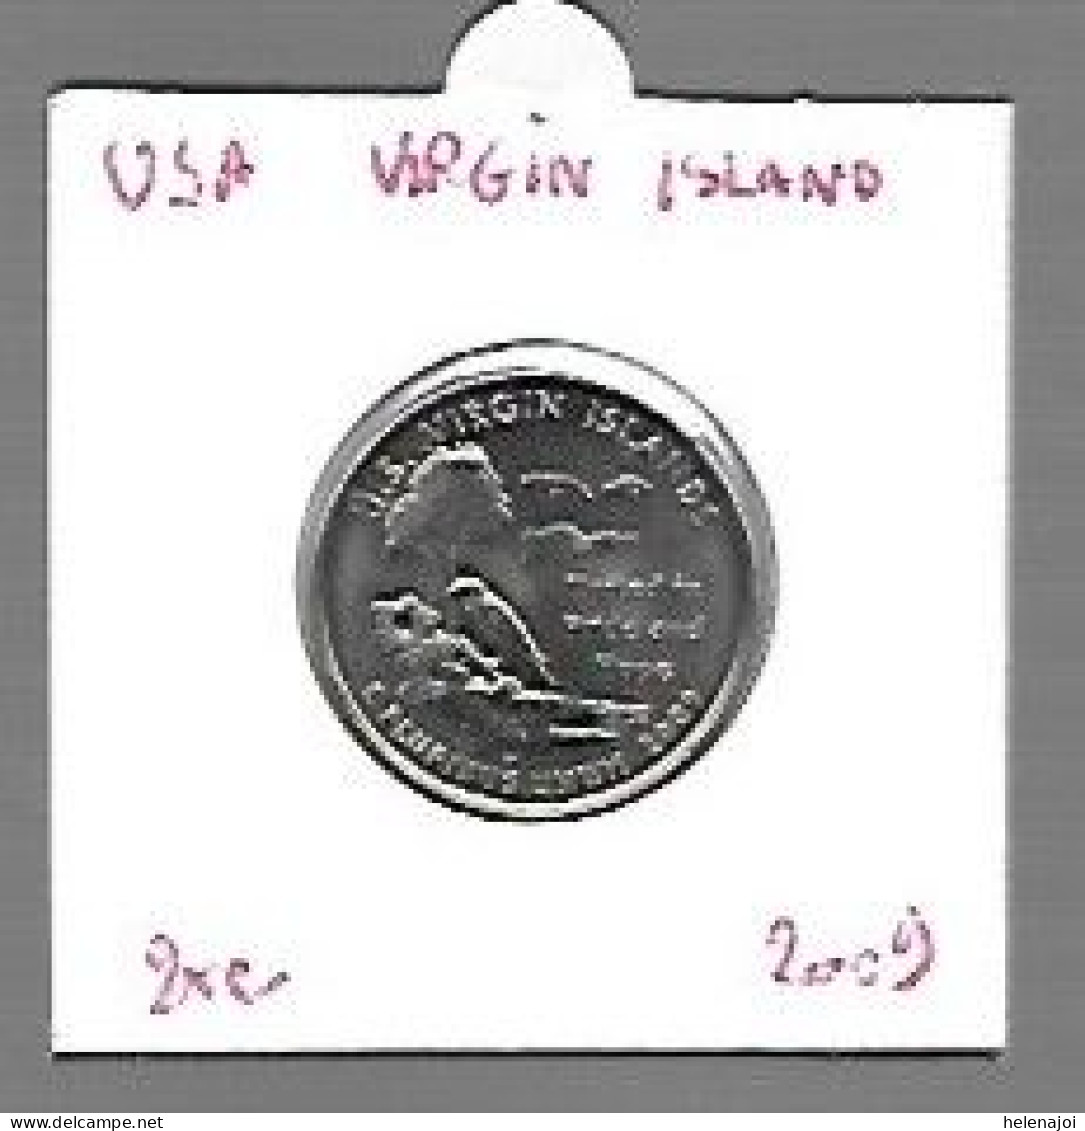 Virgin Islands - 1999-2009: State Quarters